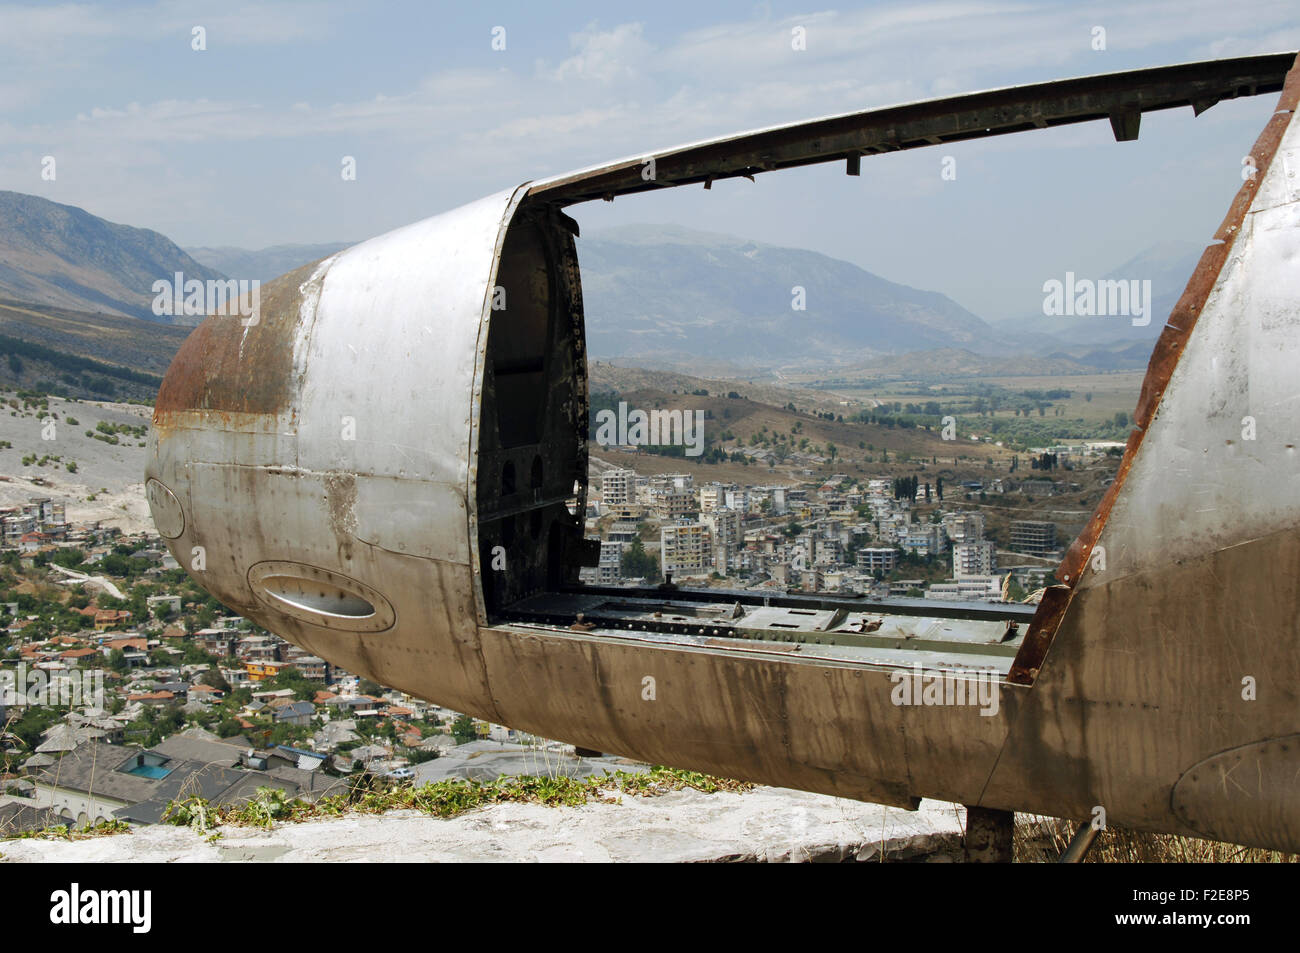 Albanien. Gjirokaster betrachtet durch das Cockpit von der amerikanischen Luftwaffe Flugzeug, das während des Kalten Krieges im Jahr 1957 landete. Von der Burg von Gjirokastra Stockfoto